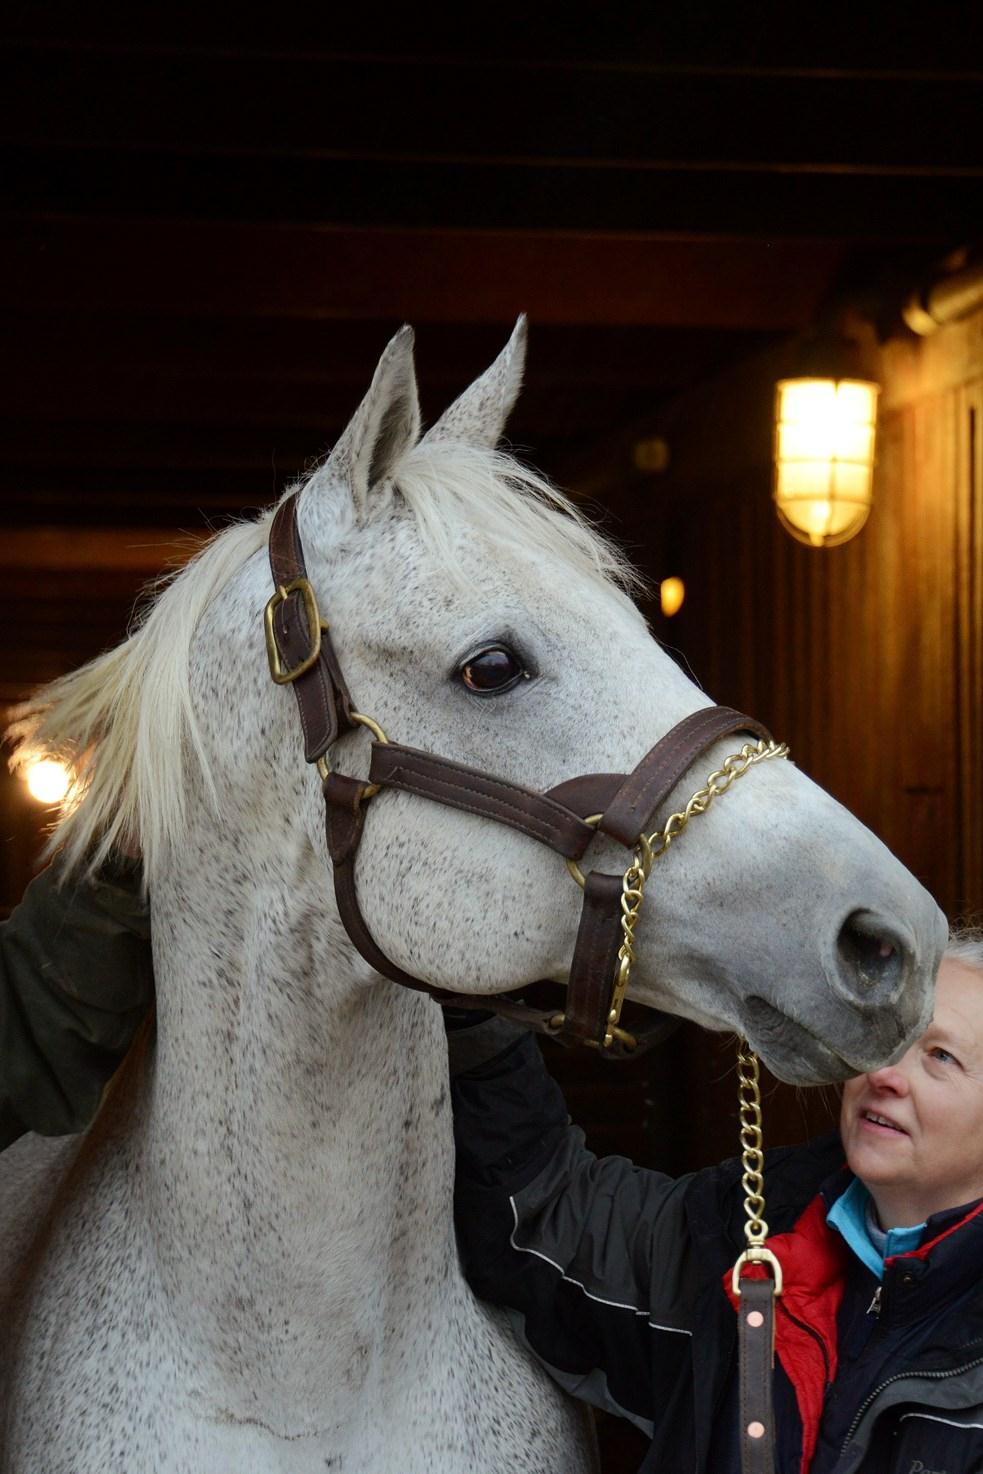 Meet the oldest surviving Kentucky Derby horse winner, Silver Charm